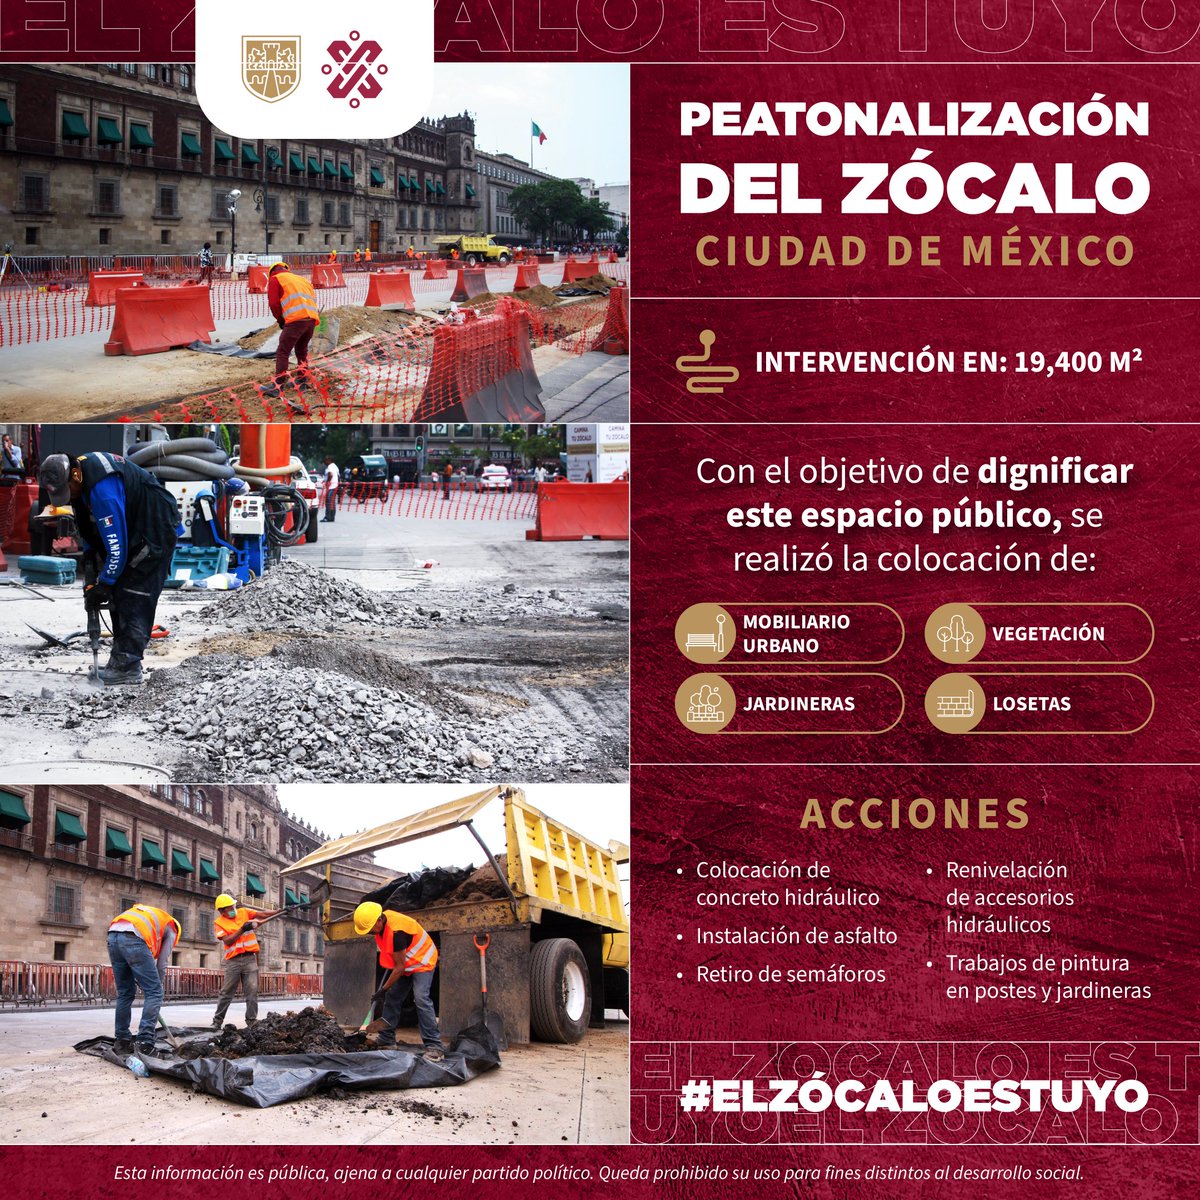 #ElZócaloEsTuyo | La peatonalización del Zócalo de la Ciudad de México contempló la intervención de 19,400 m² para peatonalizar cuatro de los seis carriles que la componen, reemplazar el asfalto y colocar mobiliario urbano, luminarias, vegetación y jardineras.